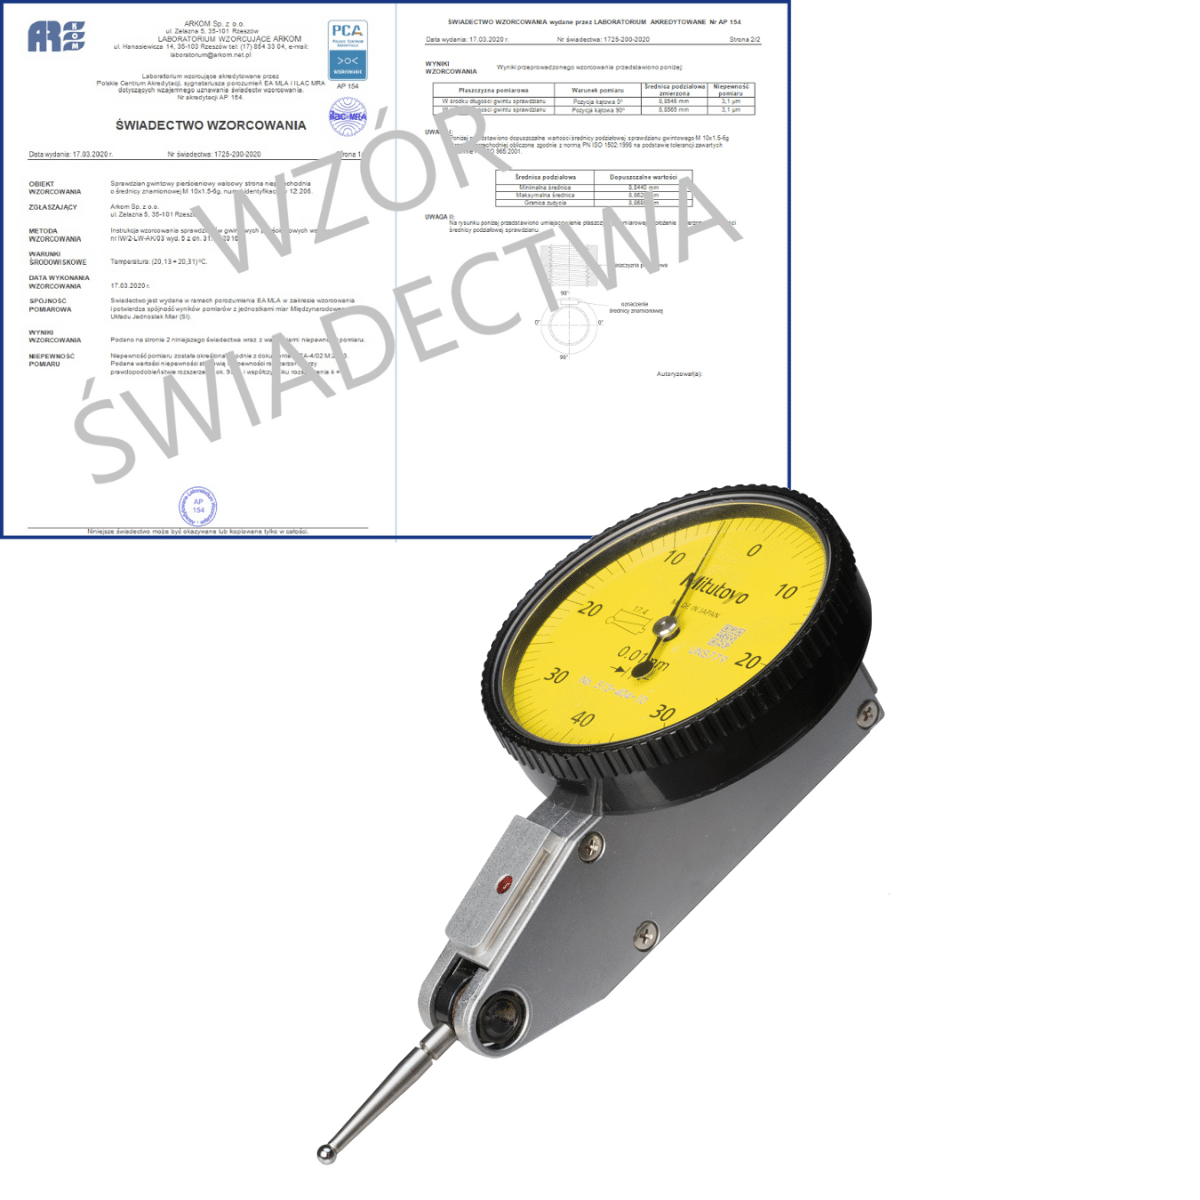 MITUTOYO czujnik dźwigniowo-zębaty 0-40-0/0,8/0,01 mm typ poziomy + świadectwo wzorcowania PCA 513-404-10E WZORC